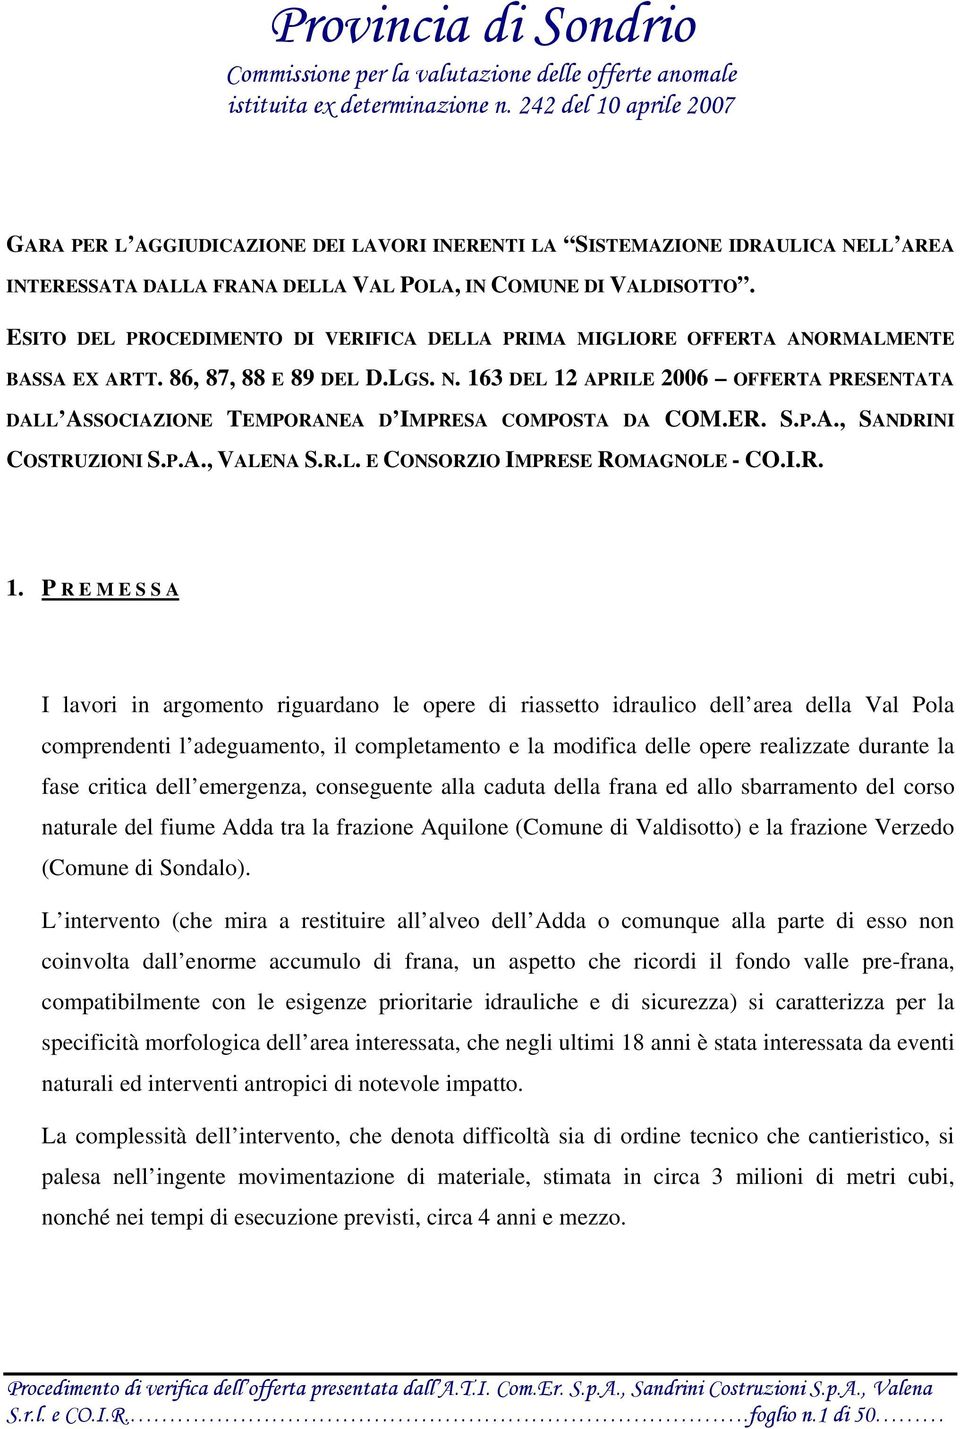 ESITO DEL PROCEDIMENTO DI VERIFICA DELLA PRIMA MIGLIORE OFFERTA ANORMALMENTE BASSA EX ARTT. 86, 87, 88 E 89 DEL D.LGS. N.